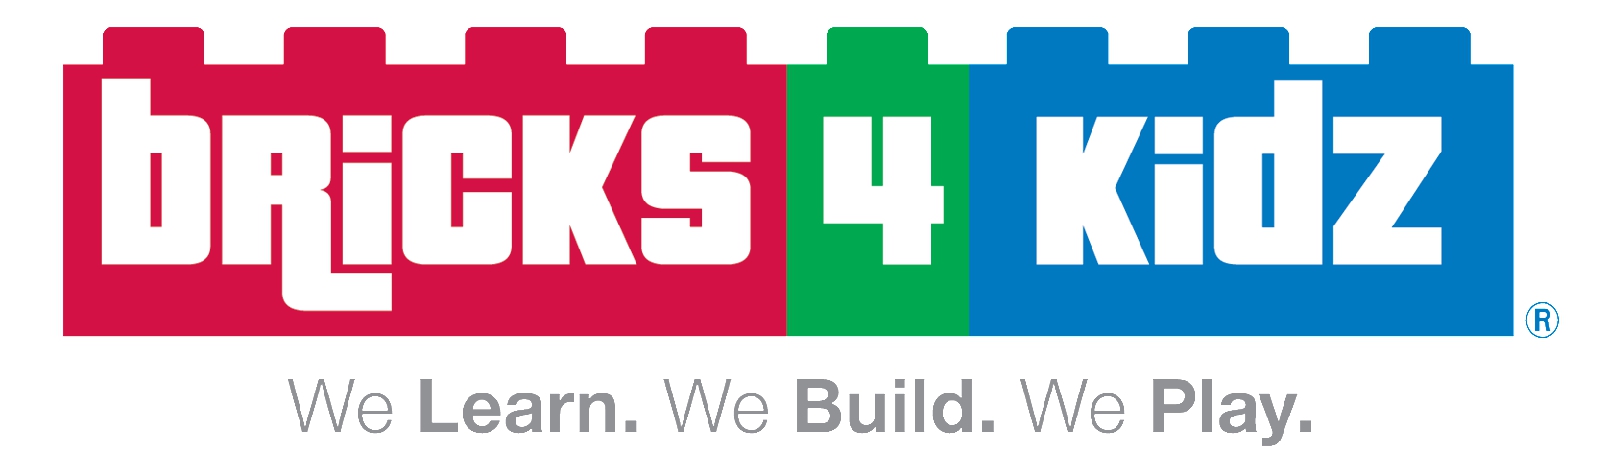 Bricks4Kidz Logo 